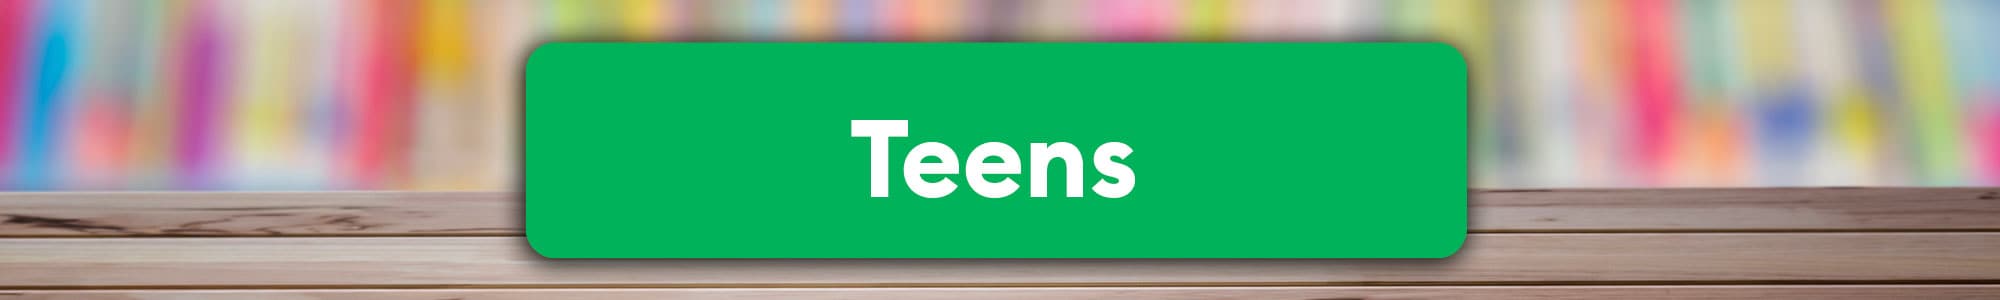 header_teens